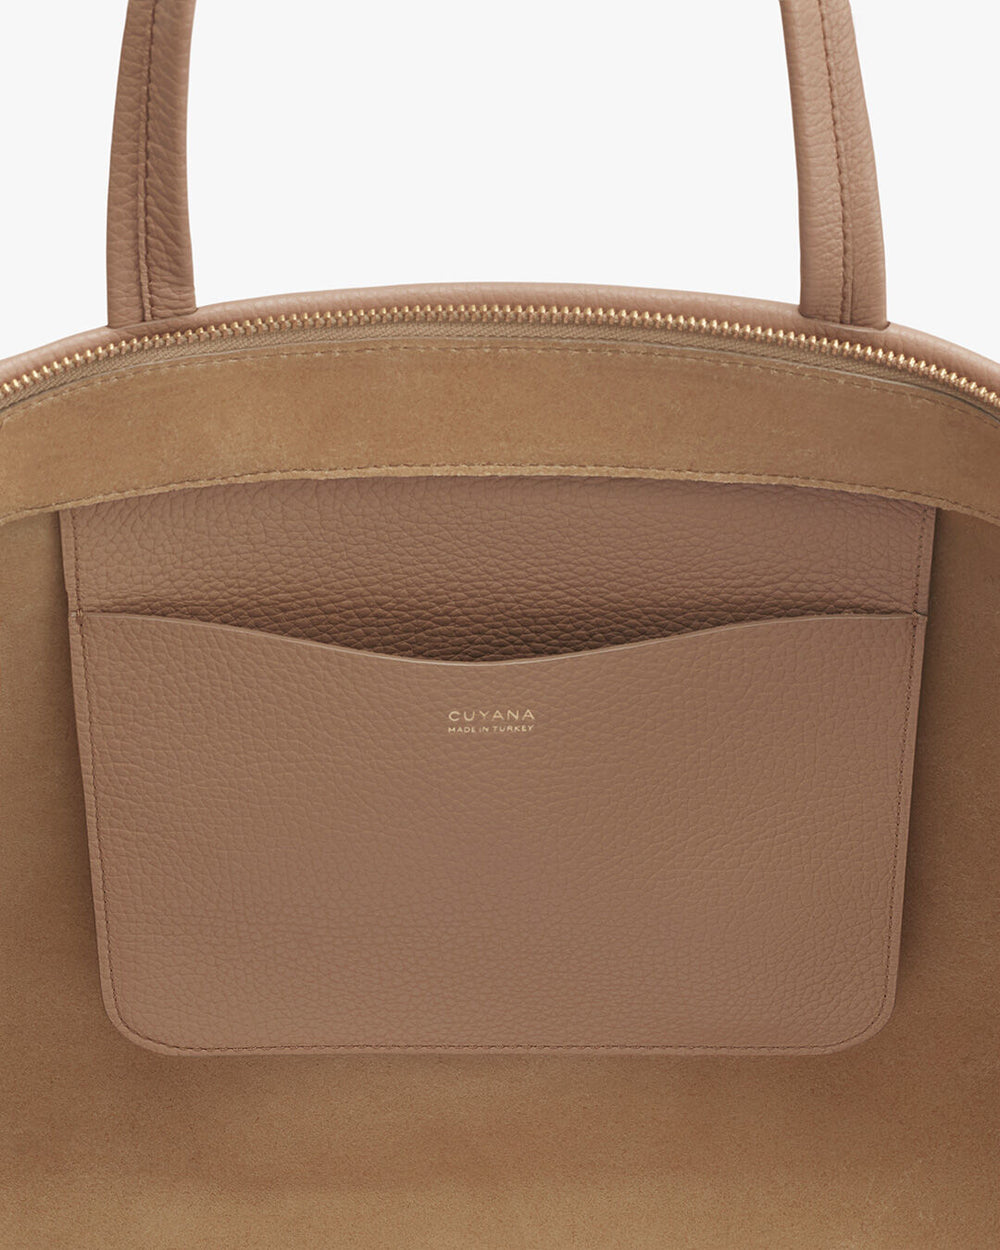 Close-up of a handbag with a brand logo and exterior pocket.